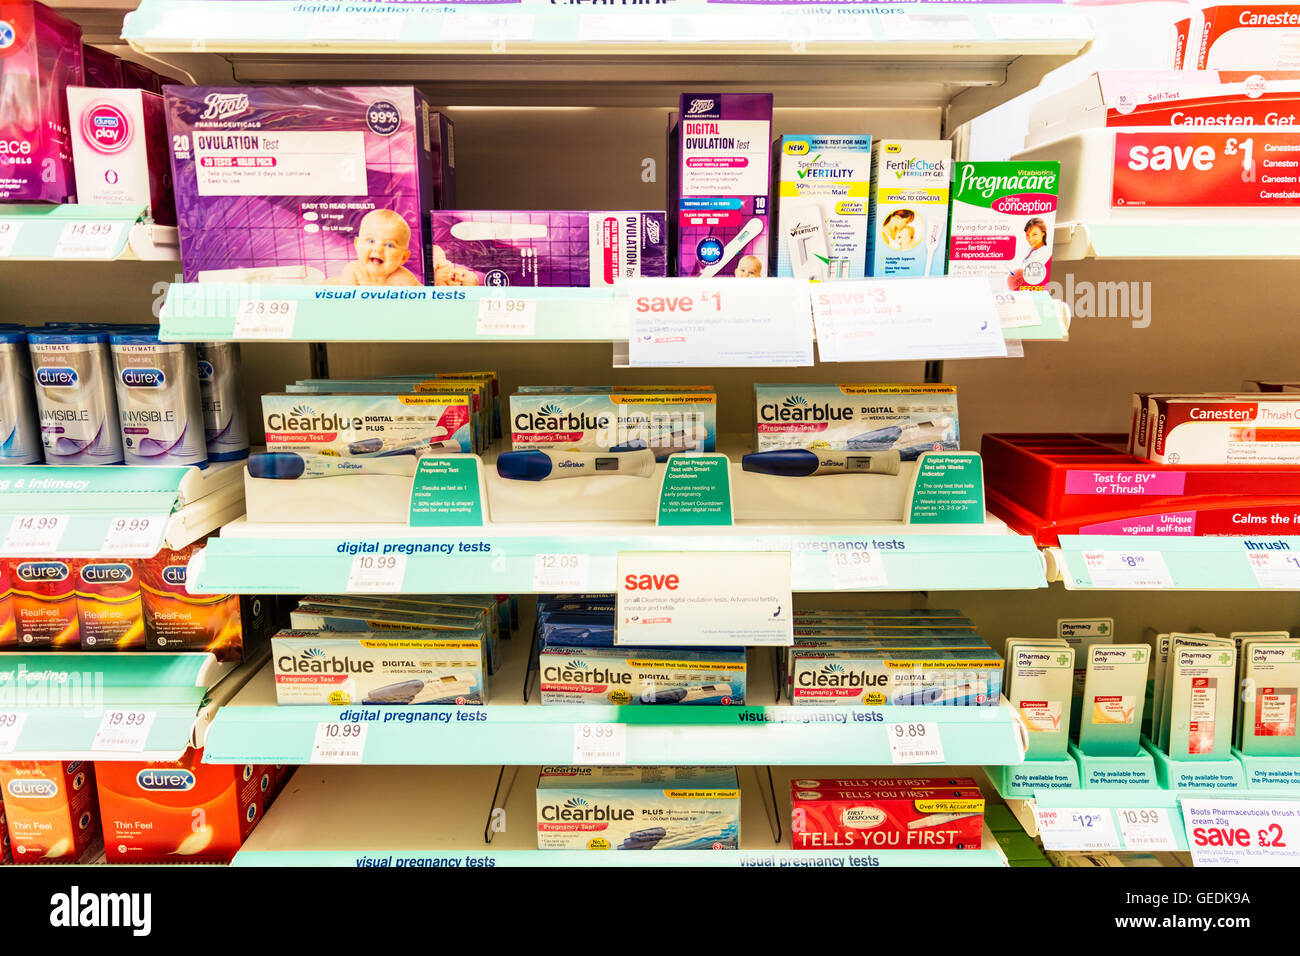 Des tests de fertilité test de grossesse ovulation vérifier kits kits produits clearblue pharmacie afficher UK Angleterre GO Banque D'Images